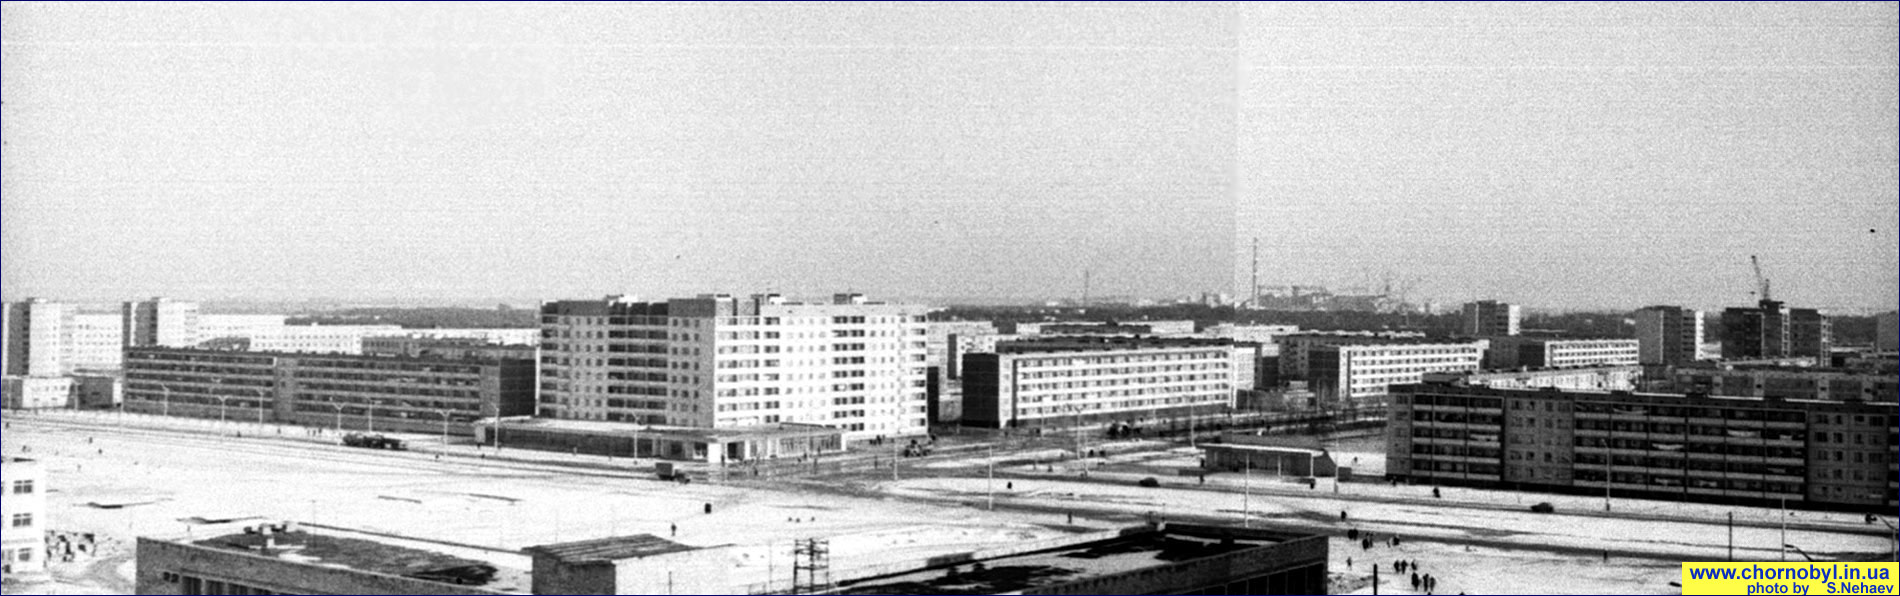 Город Припять в 1981 году Панорамное фото